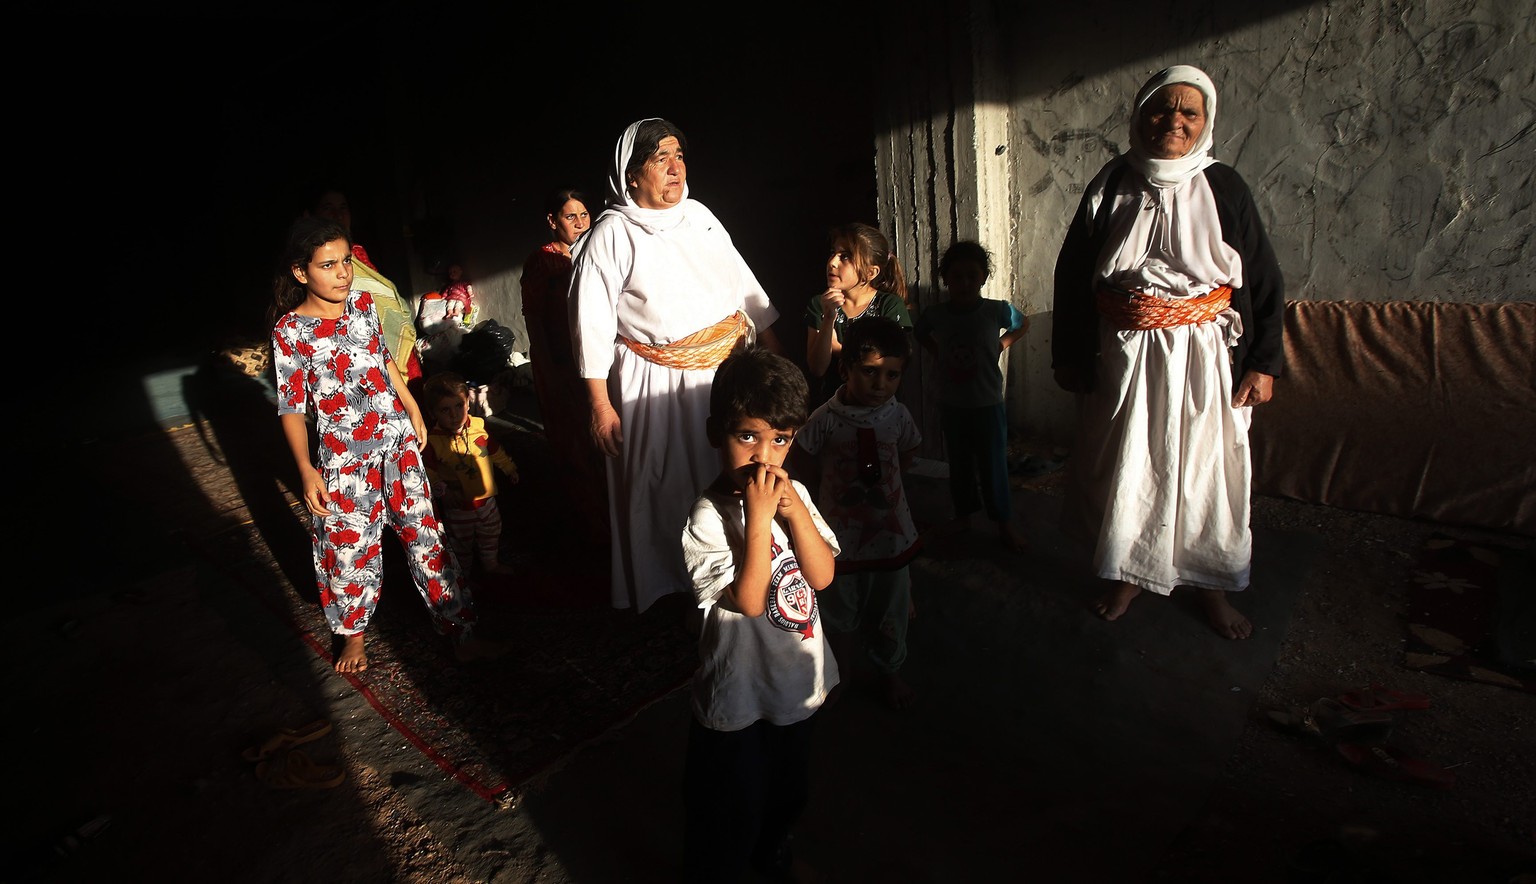 Jesidische Flüchtlinge warten nach ihrer Flucht aus dem Irak auf Hilfe.